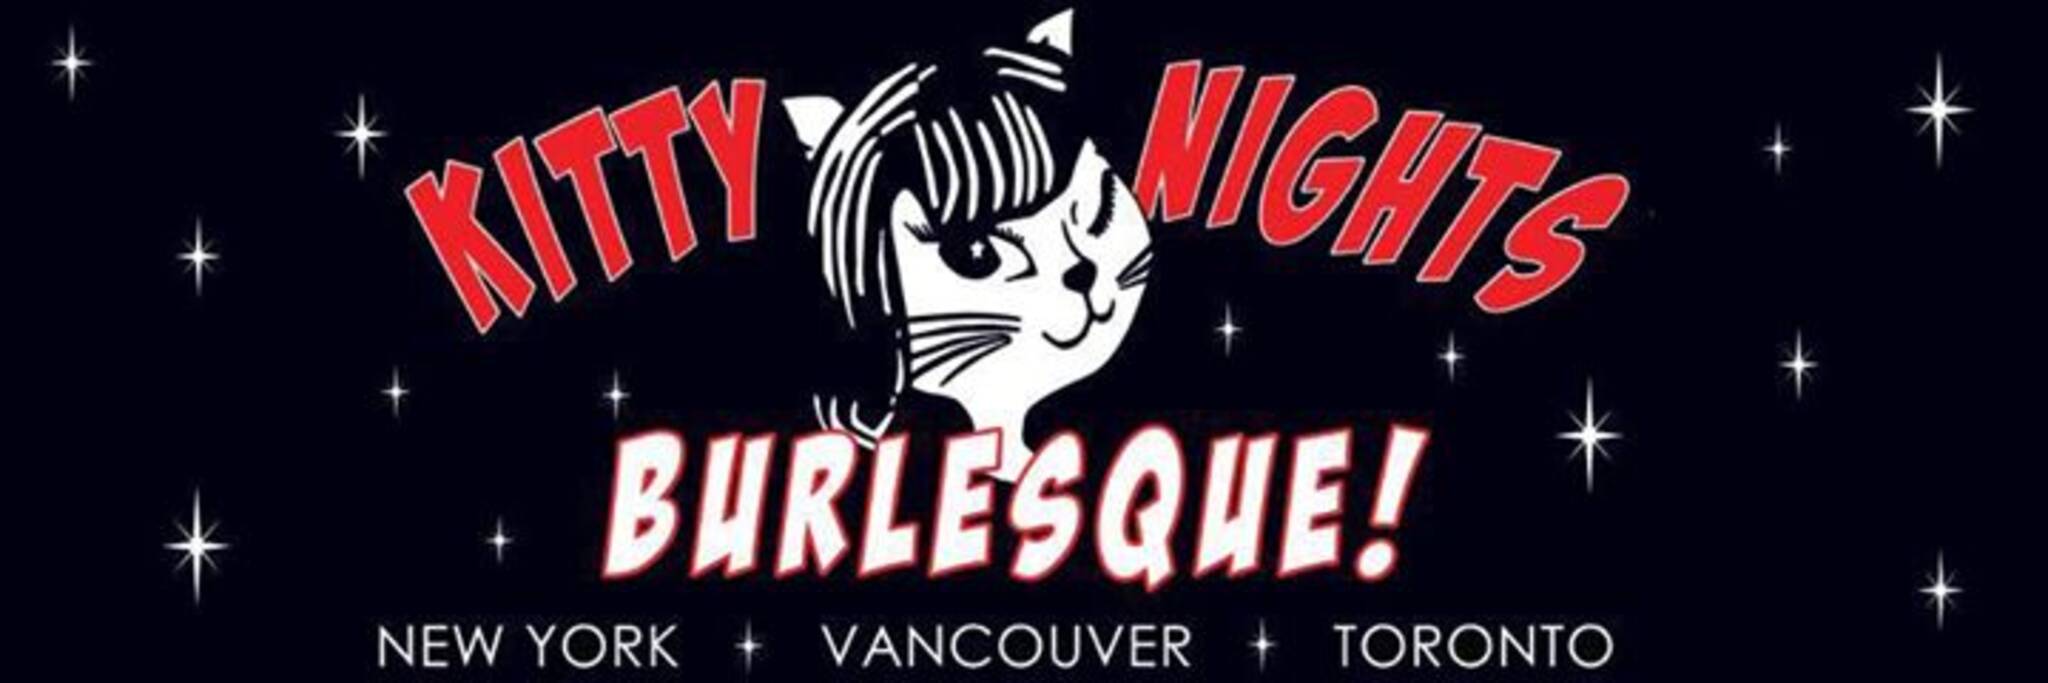 Kitty Nights Toronto Sizzle